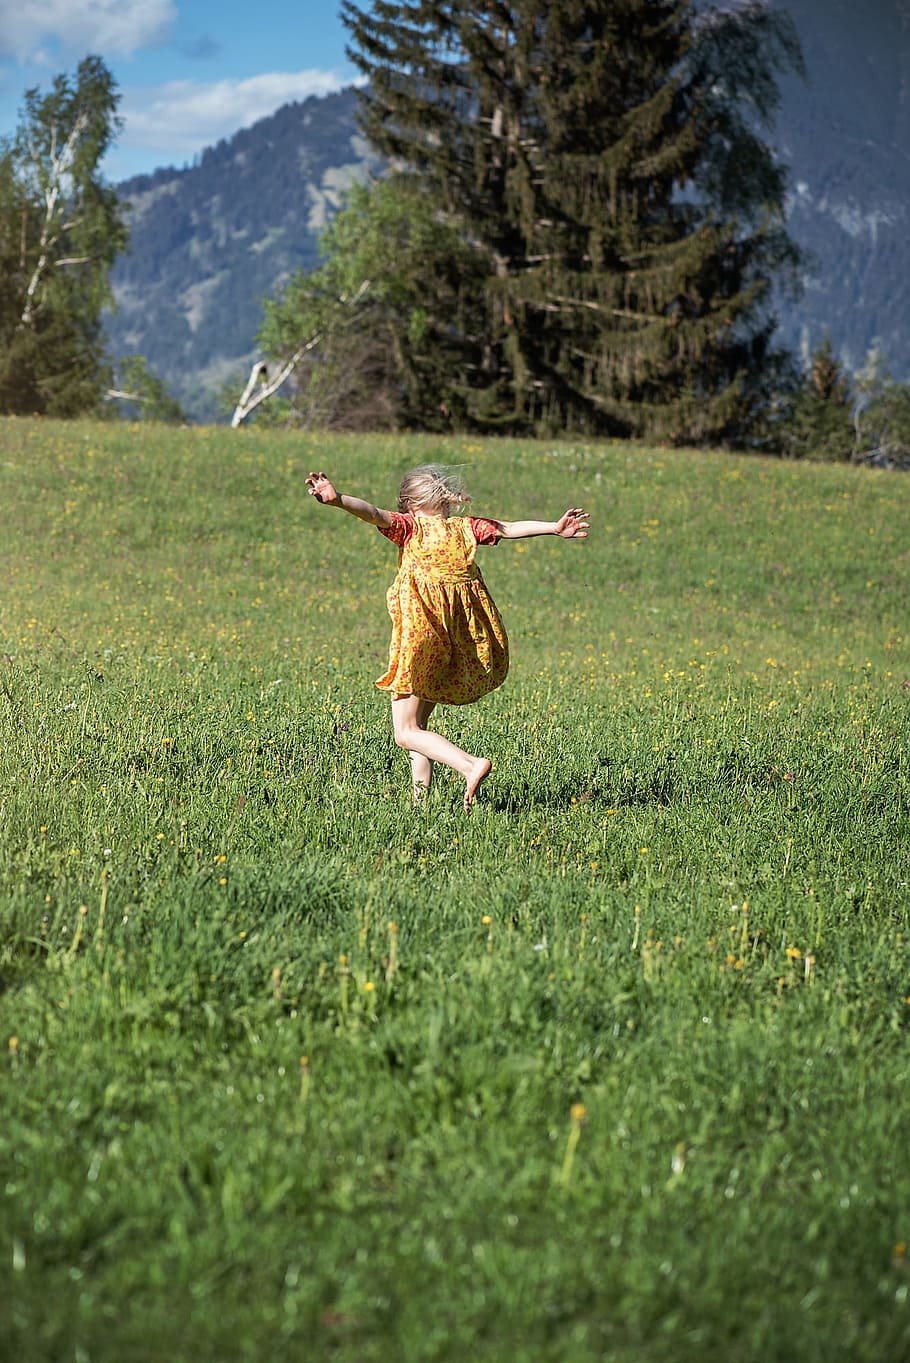 girl, running, green, grass field, pine tree, green grass, human, person, child, nature